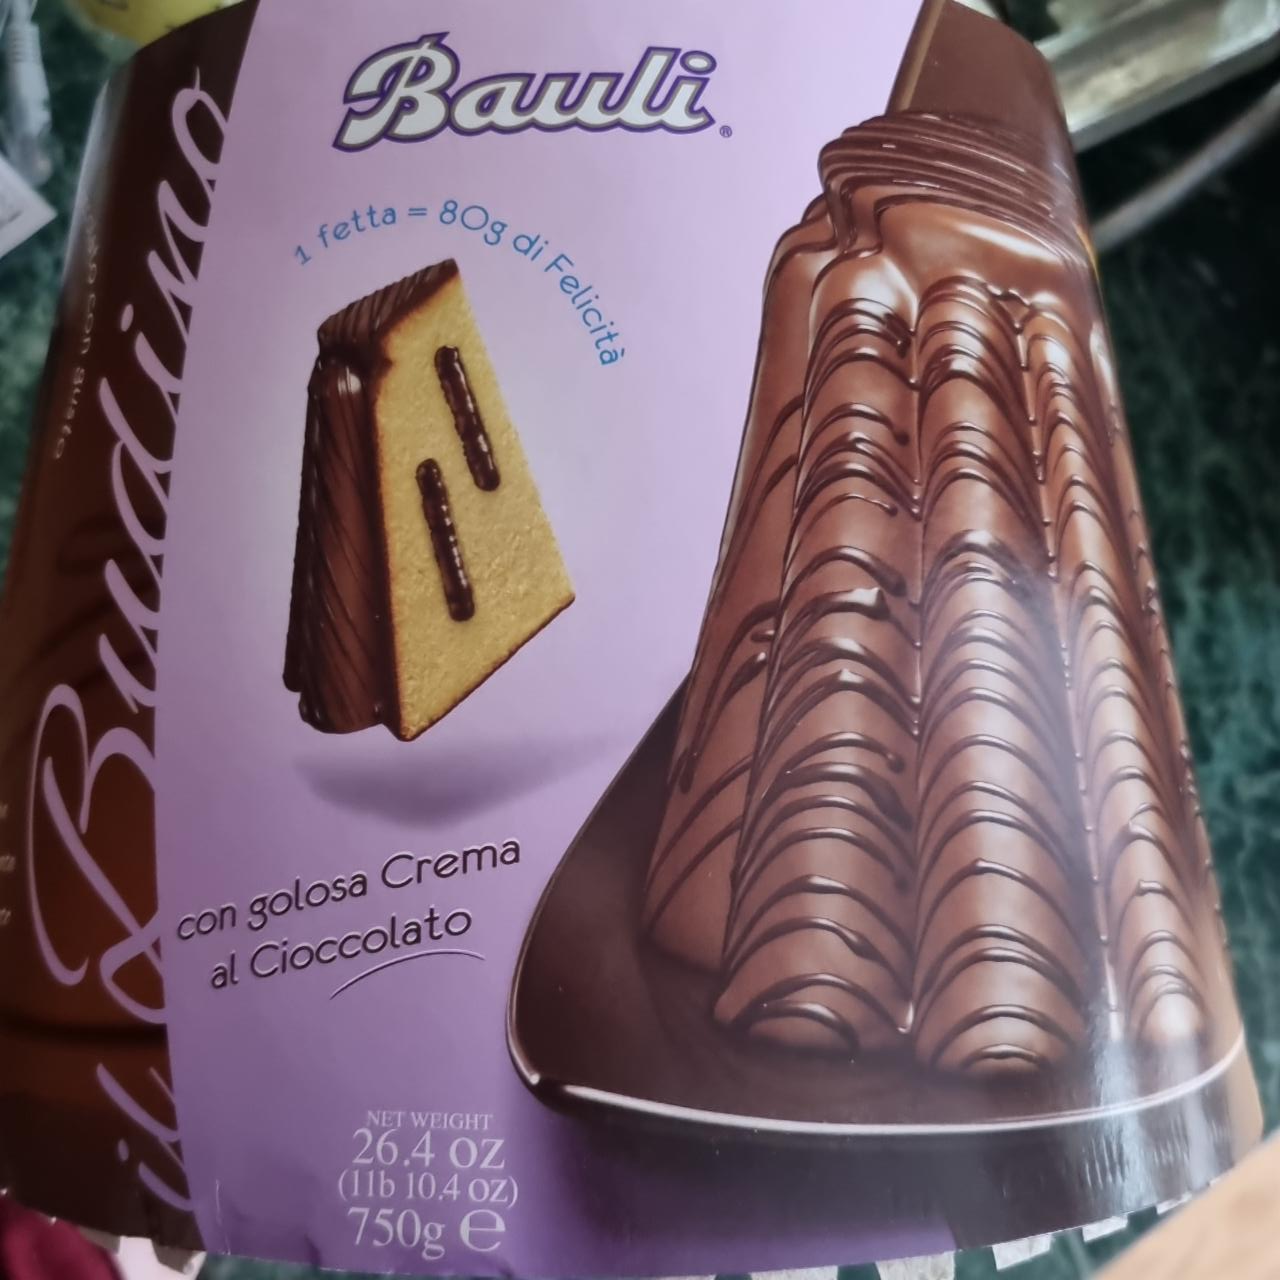 Fotografie - Budino con golosa Crema al Cioccolato Bauli